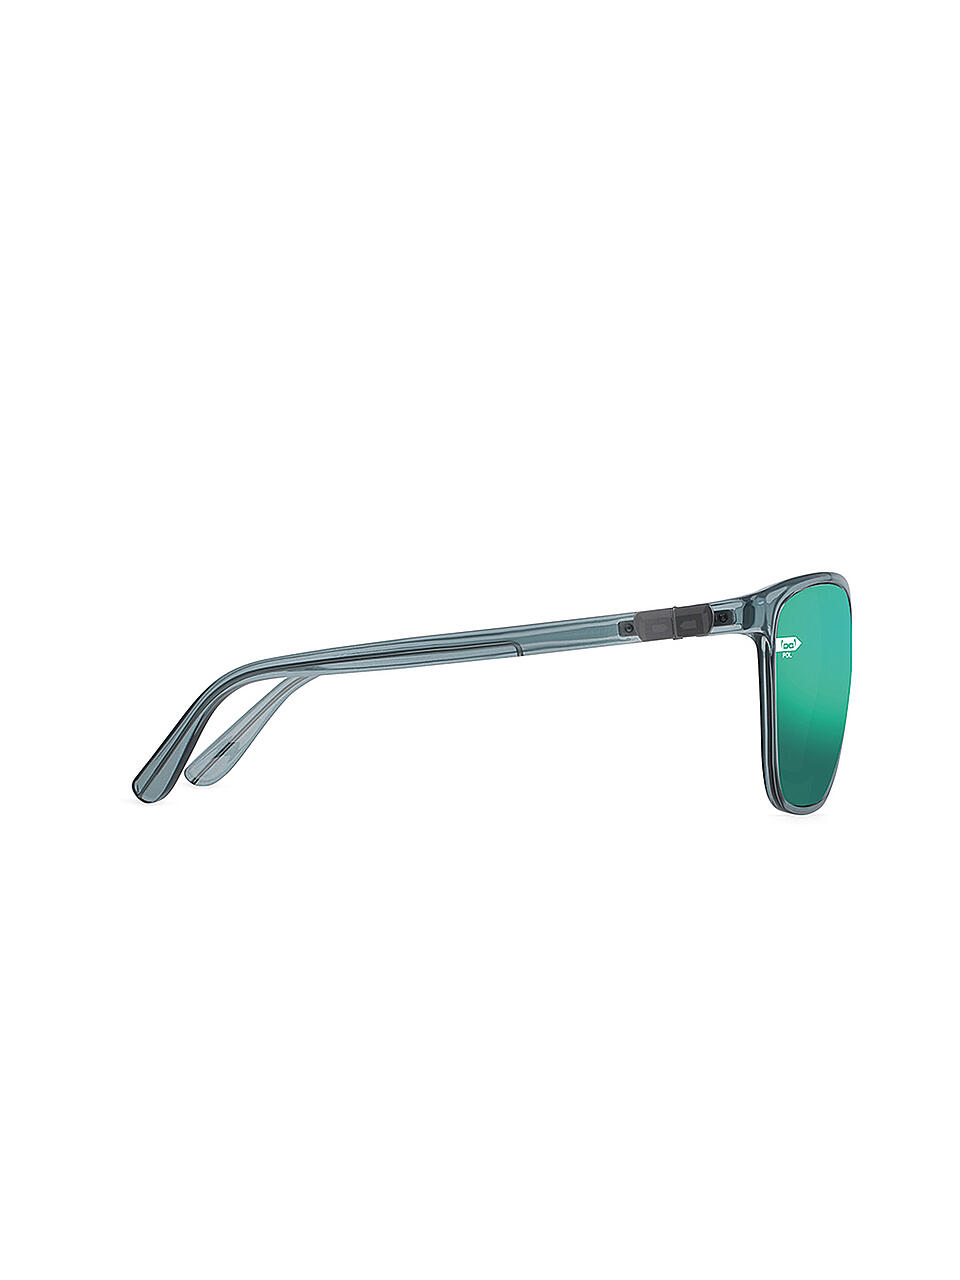 GLORYFY | Herren Sonnenbrille Gi26 Kingston F3 | grün